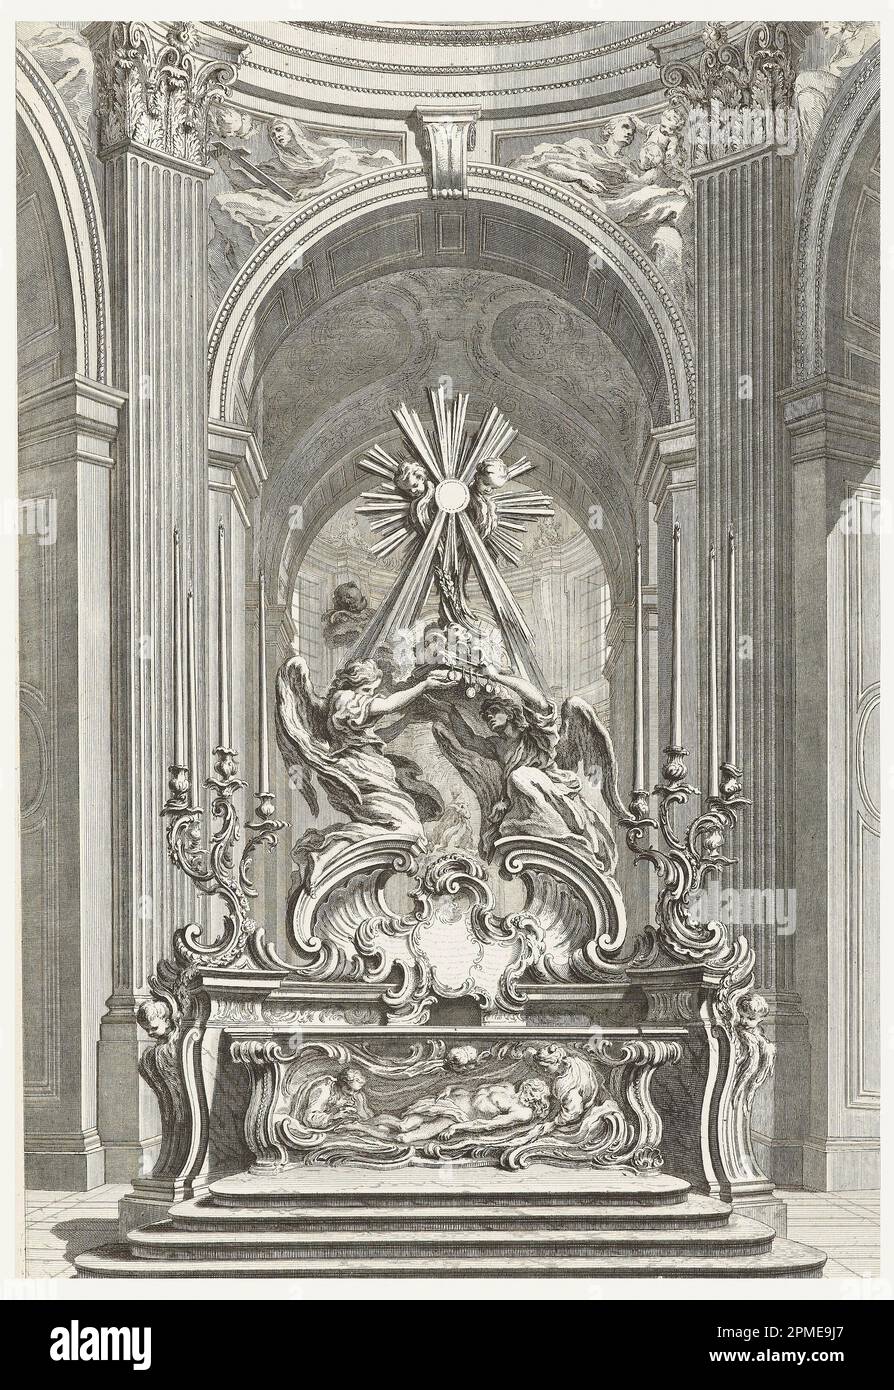 Stampa, Projet pour le Maitre Autel de l'Eglise de St. Sulpice de Paris (disegno per l'altare maggiore della Chiesa di San Sulpice di Parigi), targa 109, in oeuvres de Juste-Aurèle Meissonnier (opere di Juste-Aurèle Meissonnier); disegnata da Juste-Aurèle Meissonnier (francese, b. Italia, 1695–1750); incisa da Gabriel Huquier (francese, 1695–1772); Francia; incisione su carta bianca; 54,4 x 36,7 cm (21 7/16 x 14 7/16 cm). Foto Stock